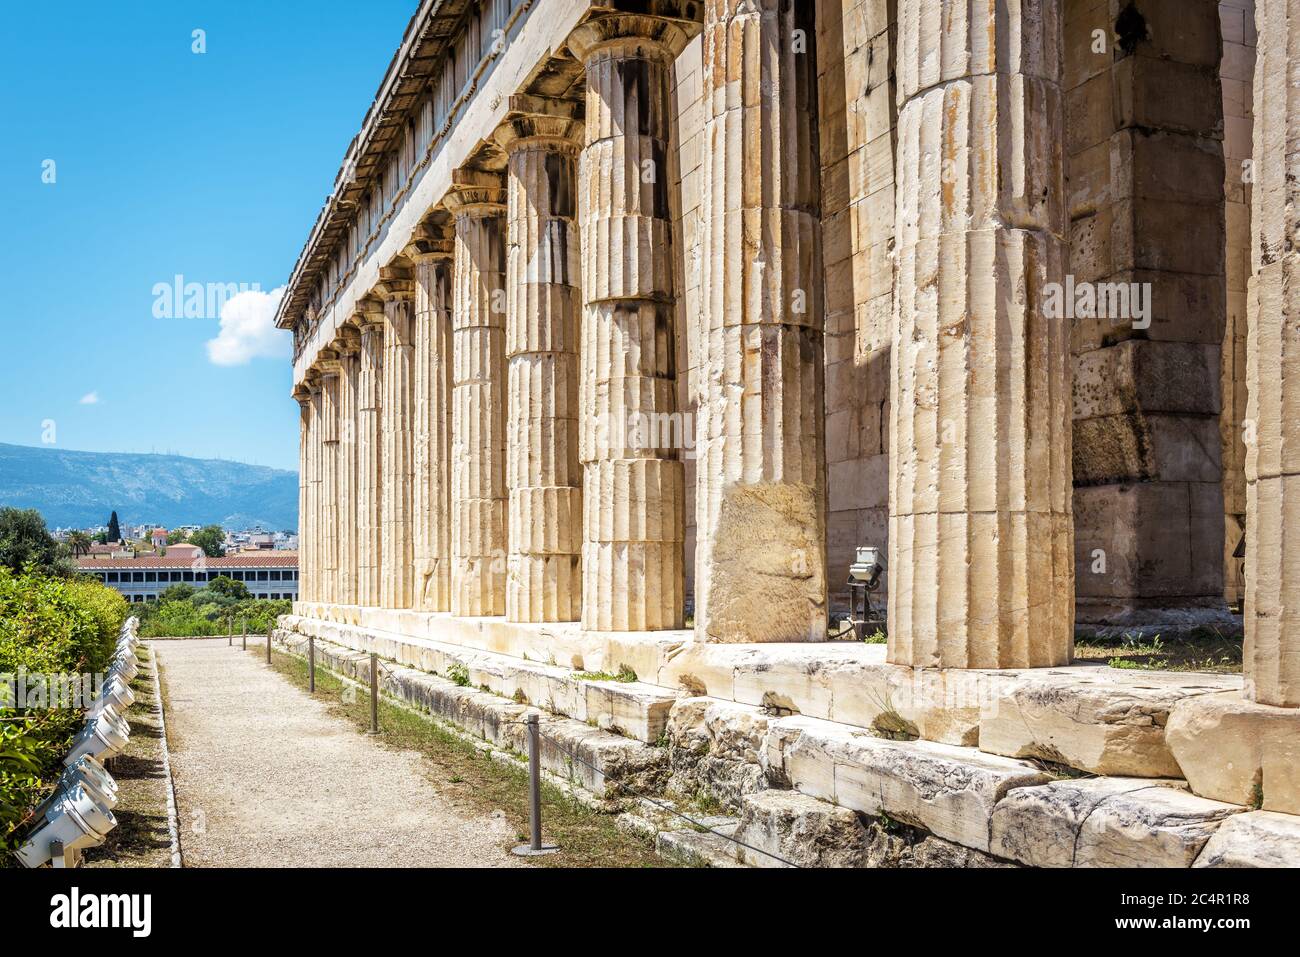 Tempel von Hephaestus, Athen, Griechenland. Es ist eine der wichtigsten Touristenattraktionen von Athen. Berühmte antike Architektur in Agora von Athen. Sonnige Panor Stockfoto